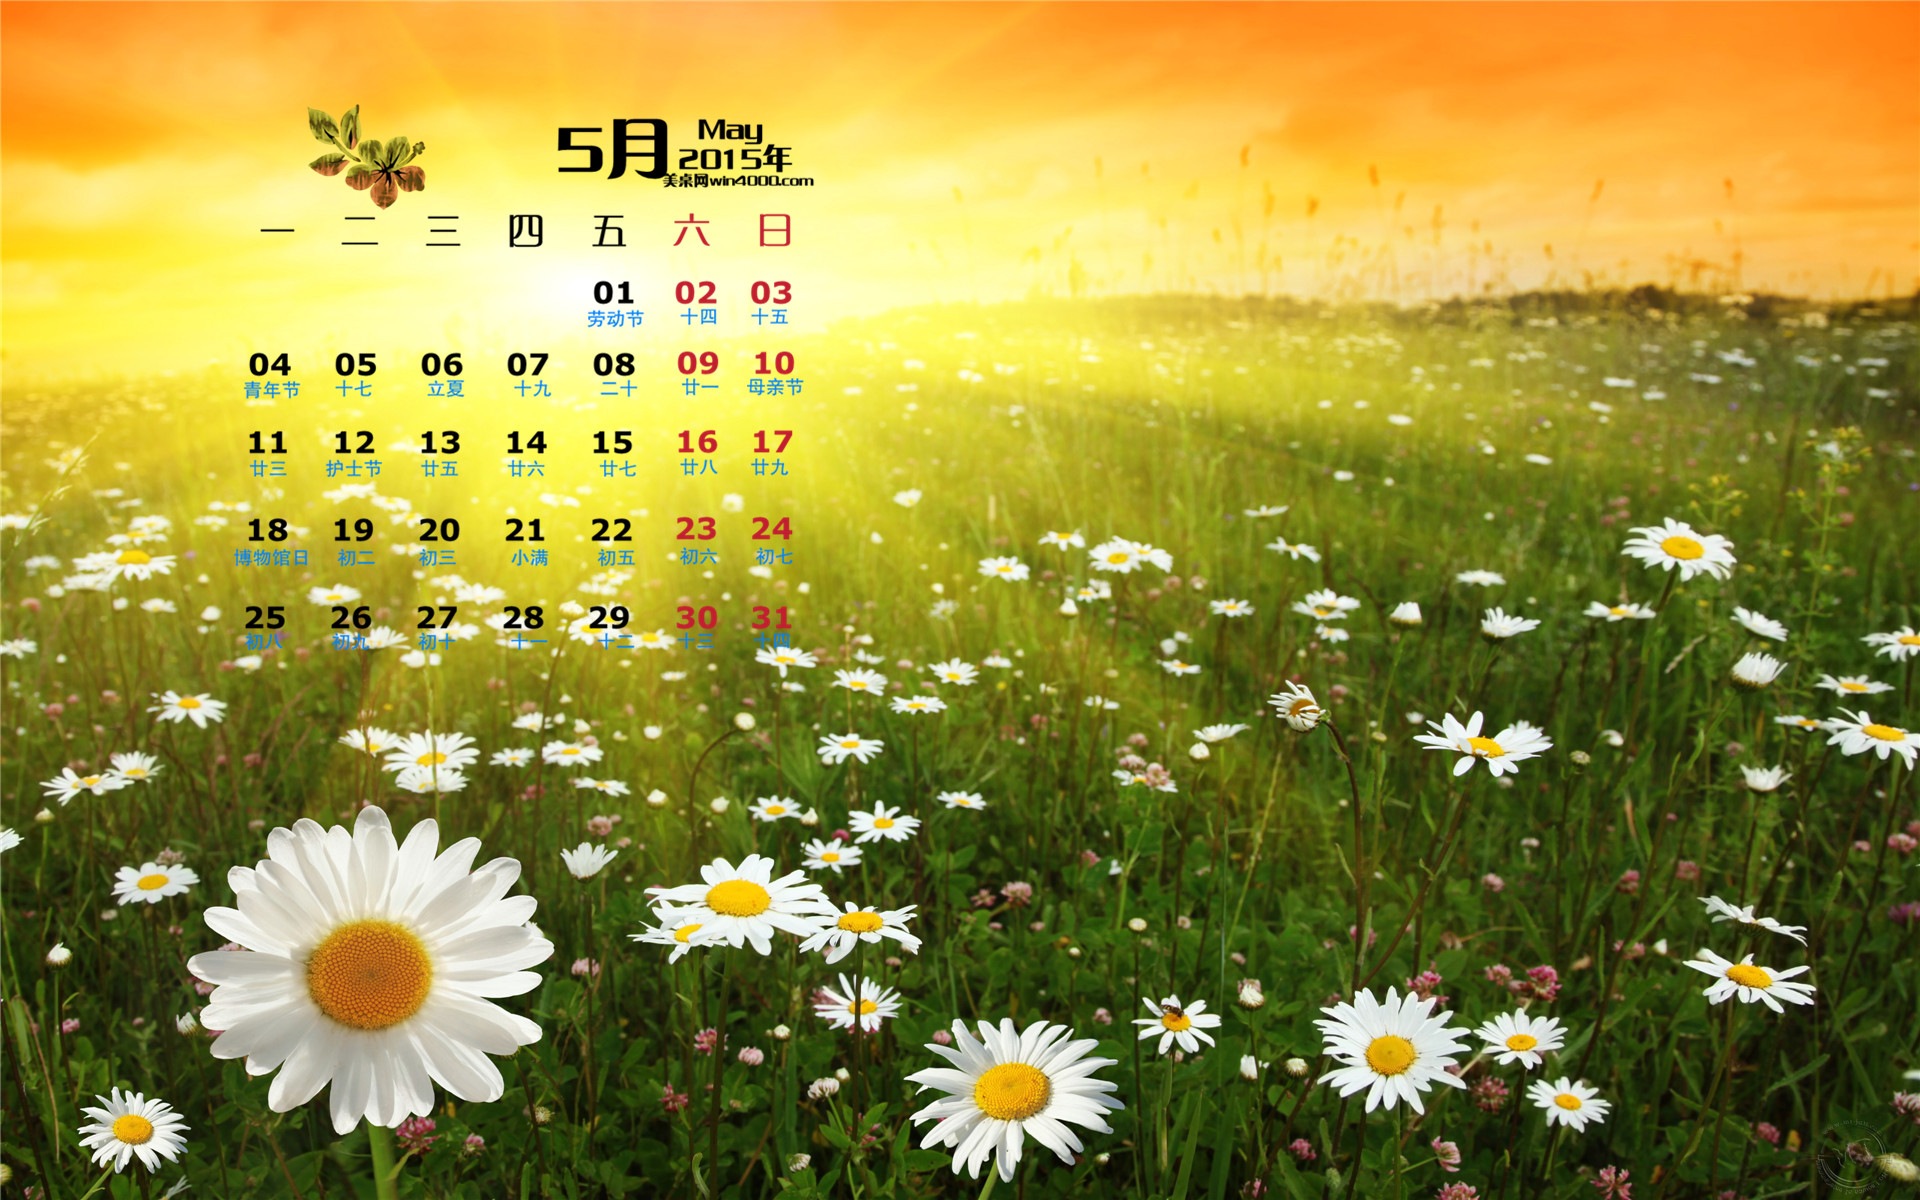 Mai 2015 Kalender Wallpaper (1) #15 - 1920x1200